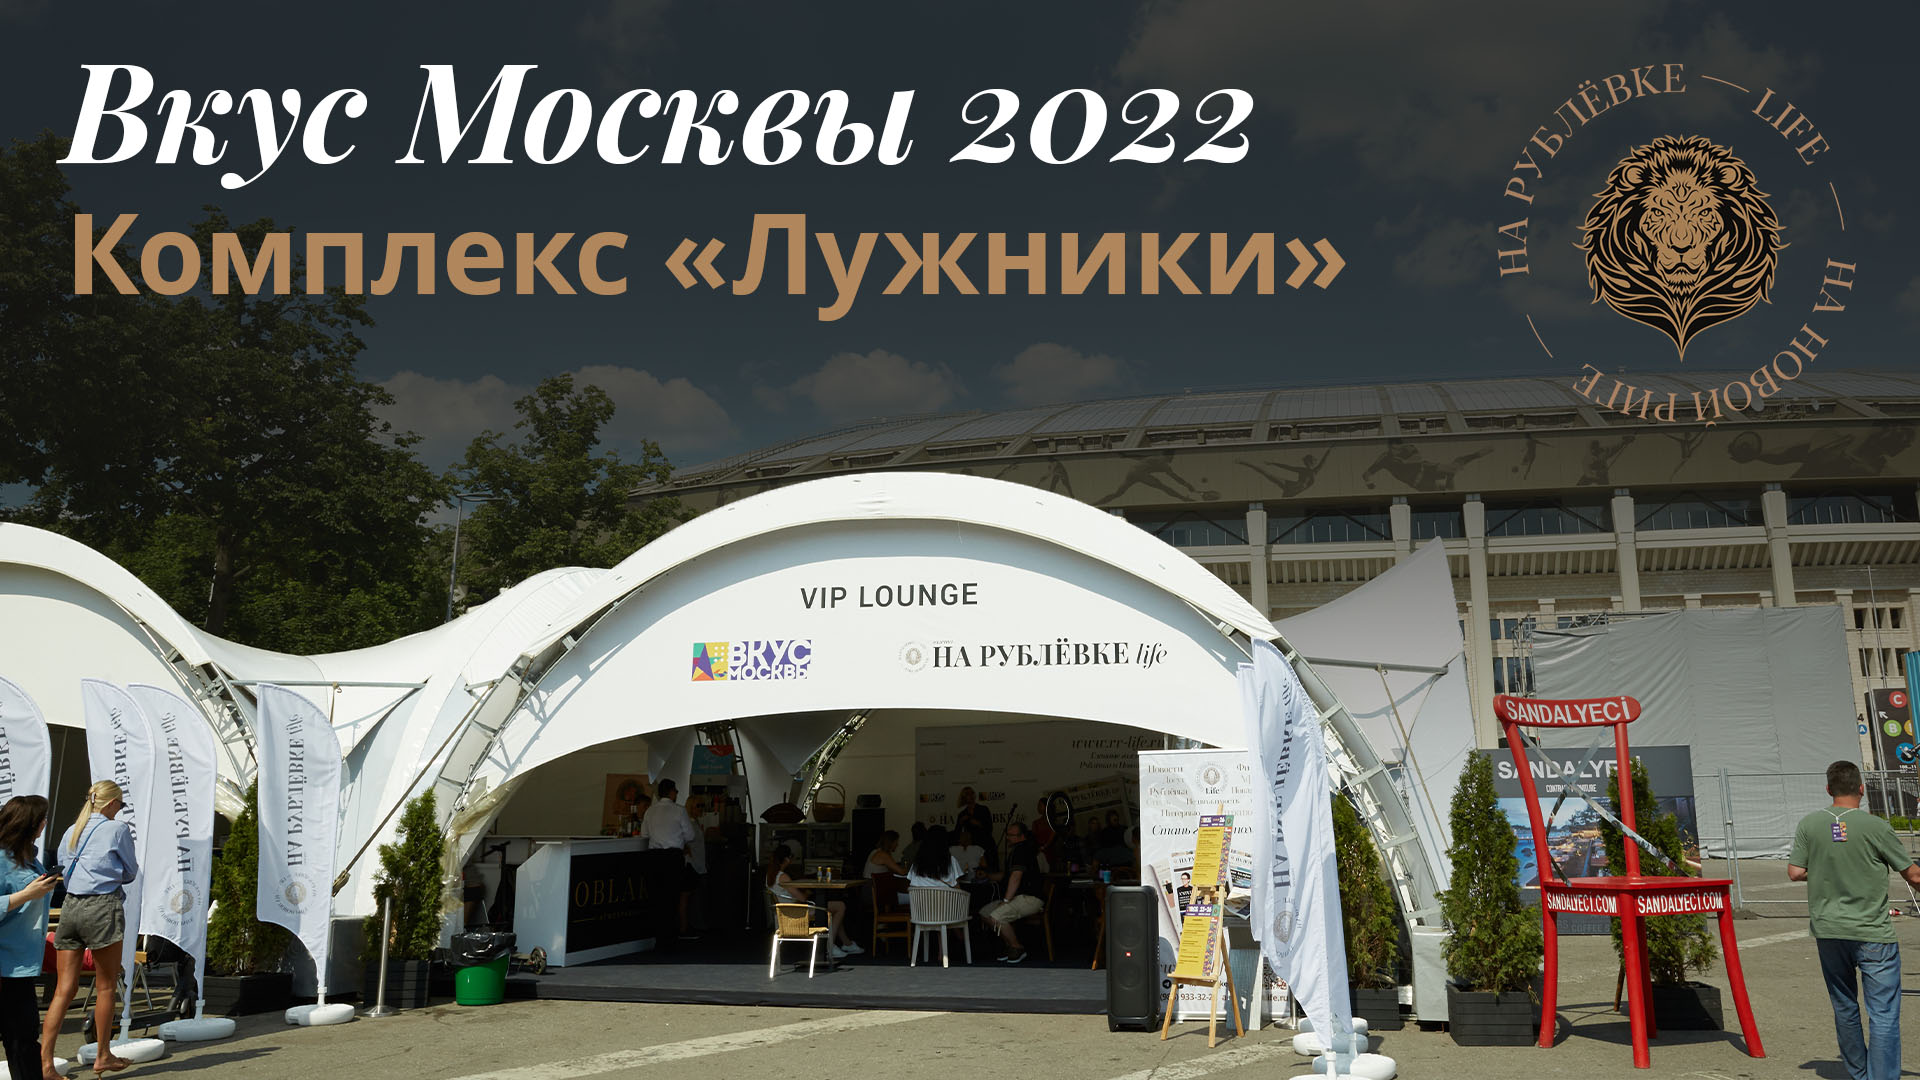 Вкус Москвы 2022 в Лужниках